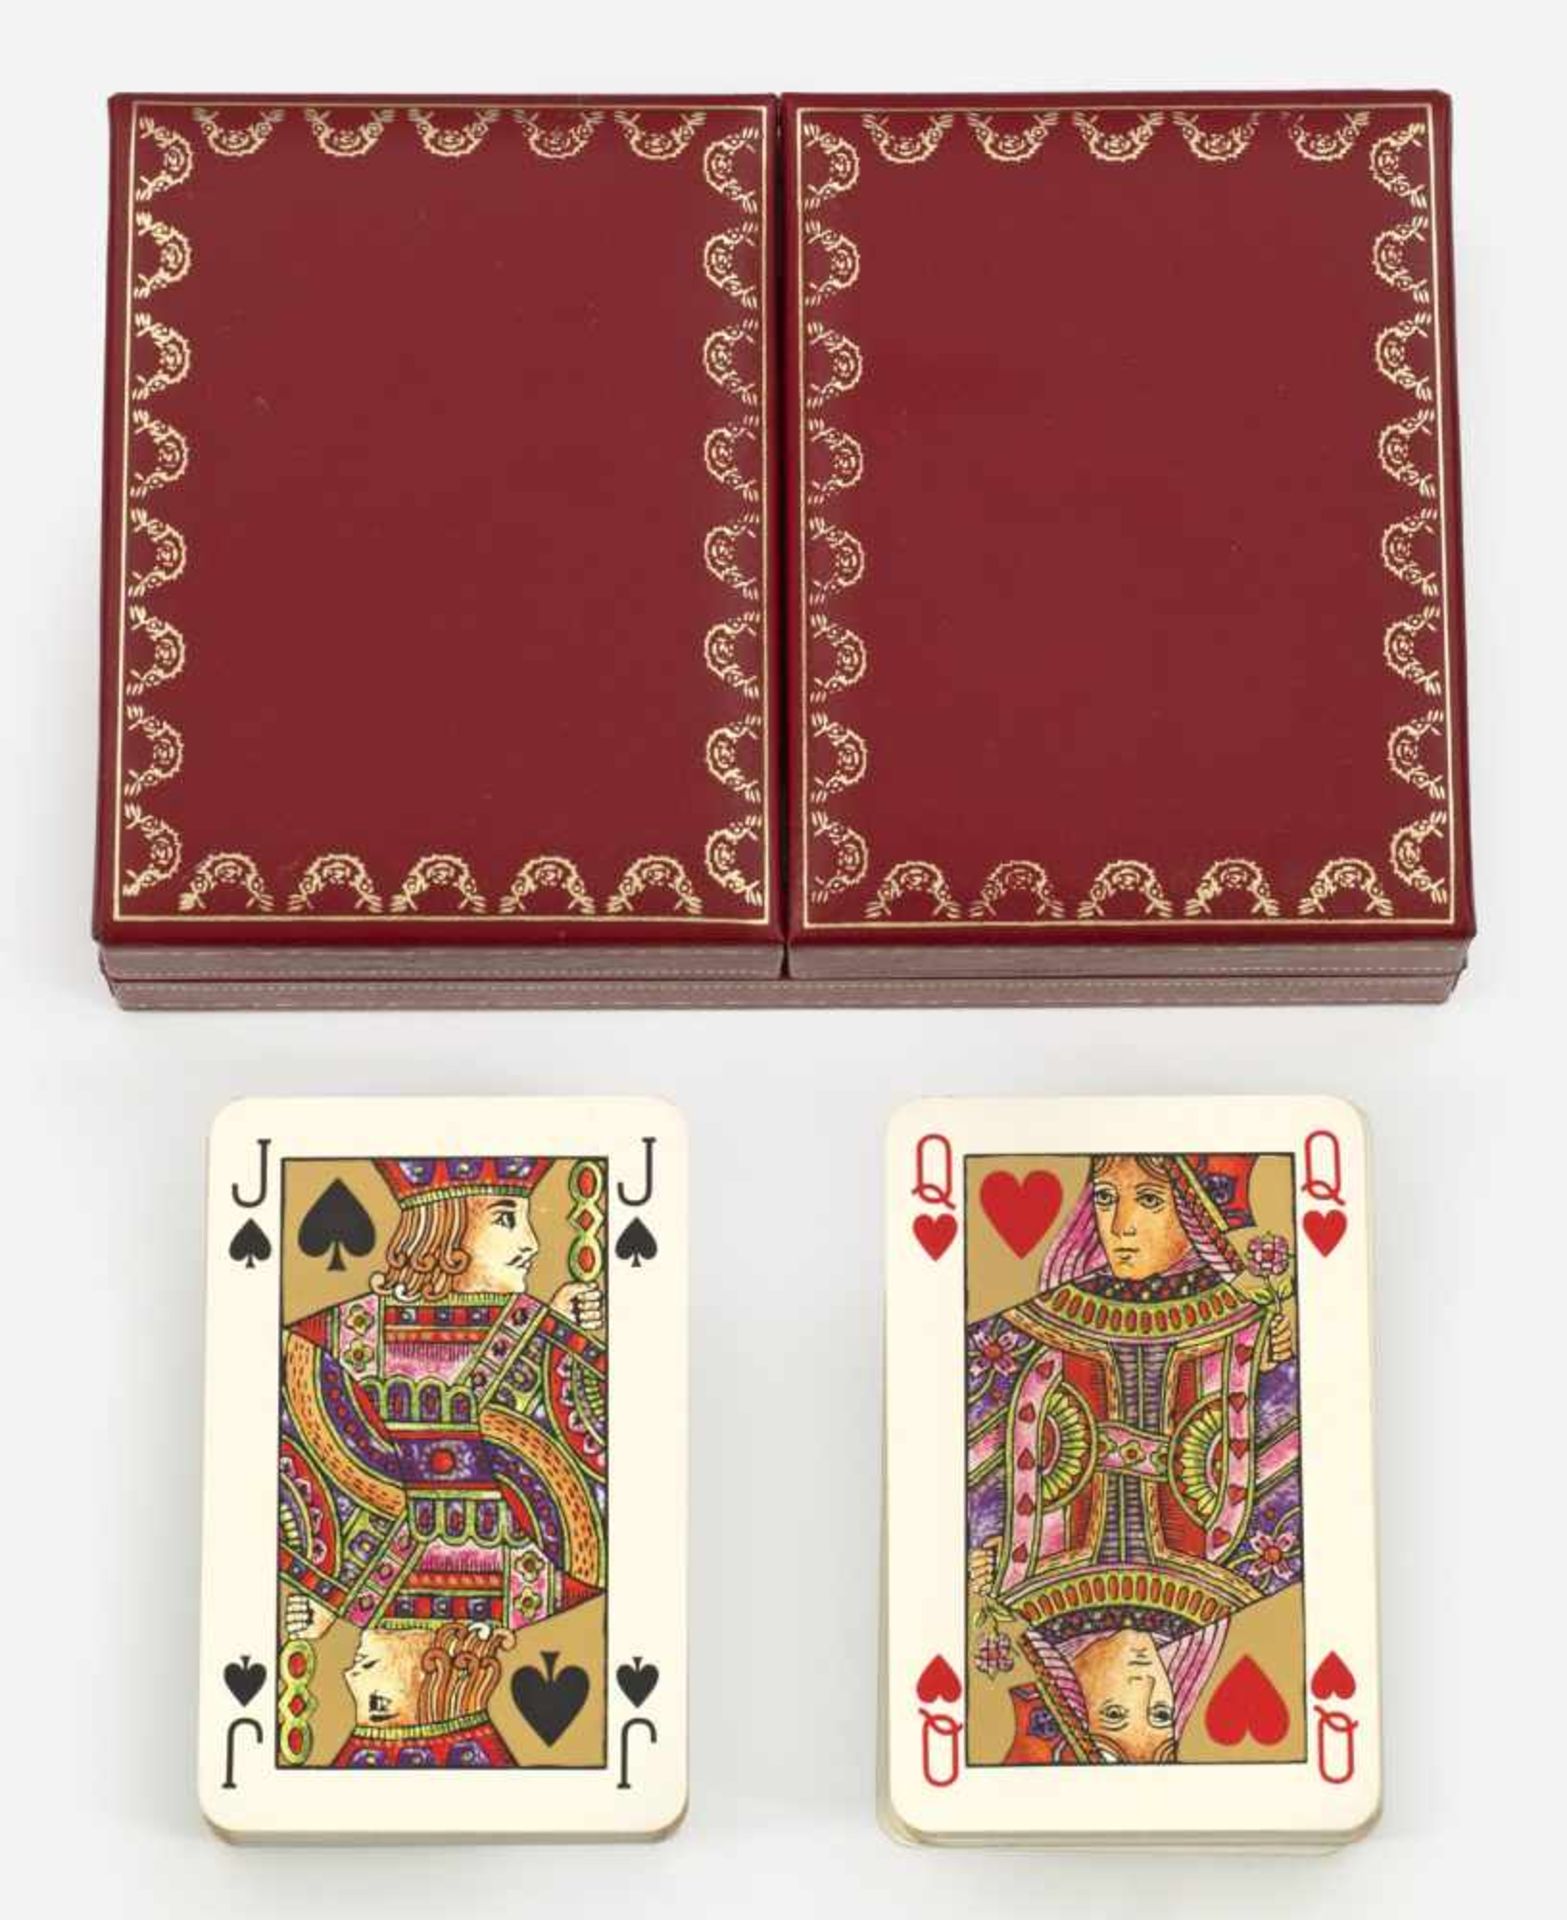 "Must de Cartier"-Kartenspiel für Bridgein Originalbox. Zwei französische Kartensätze aus je 52